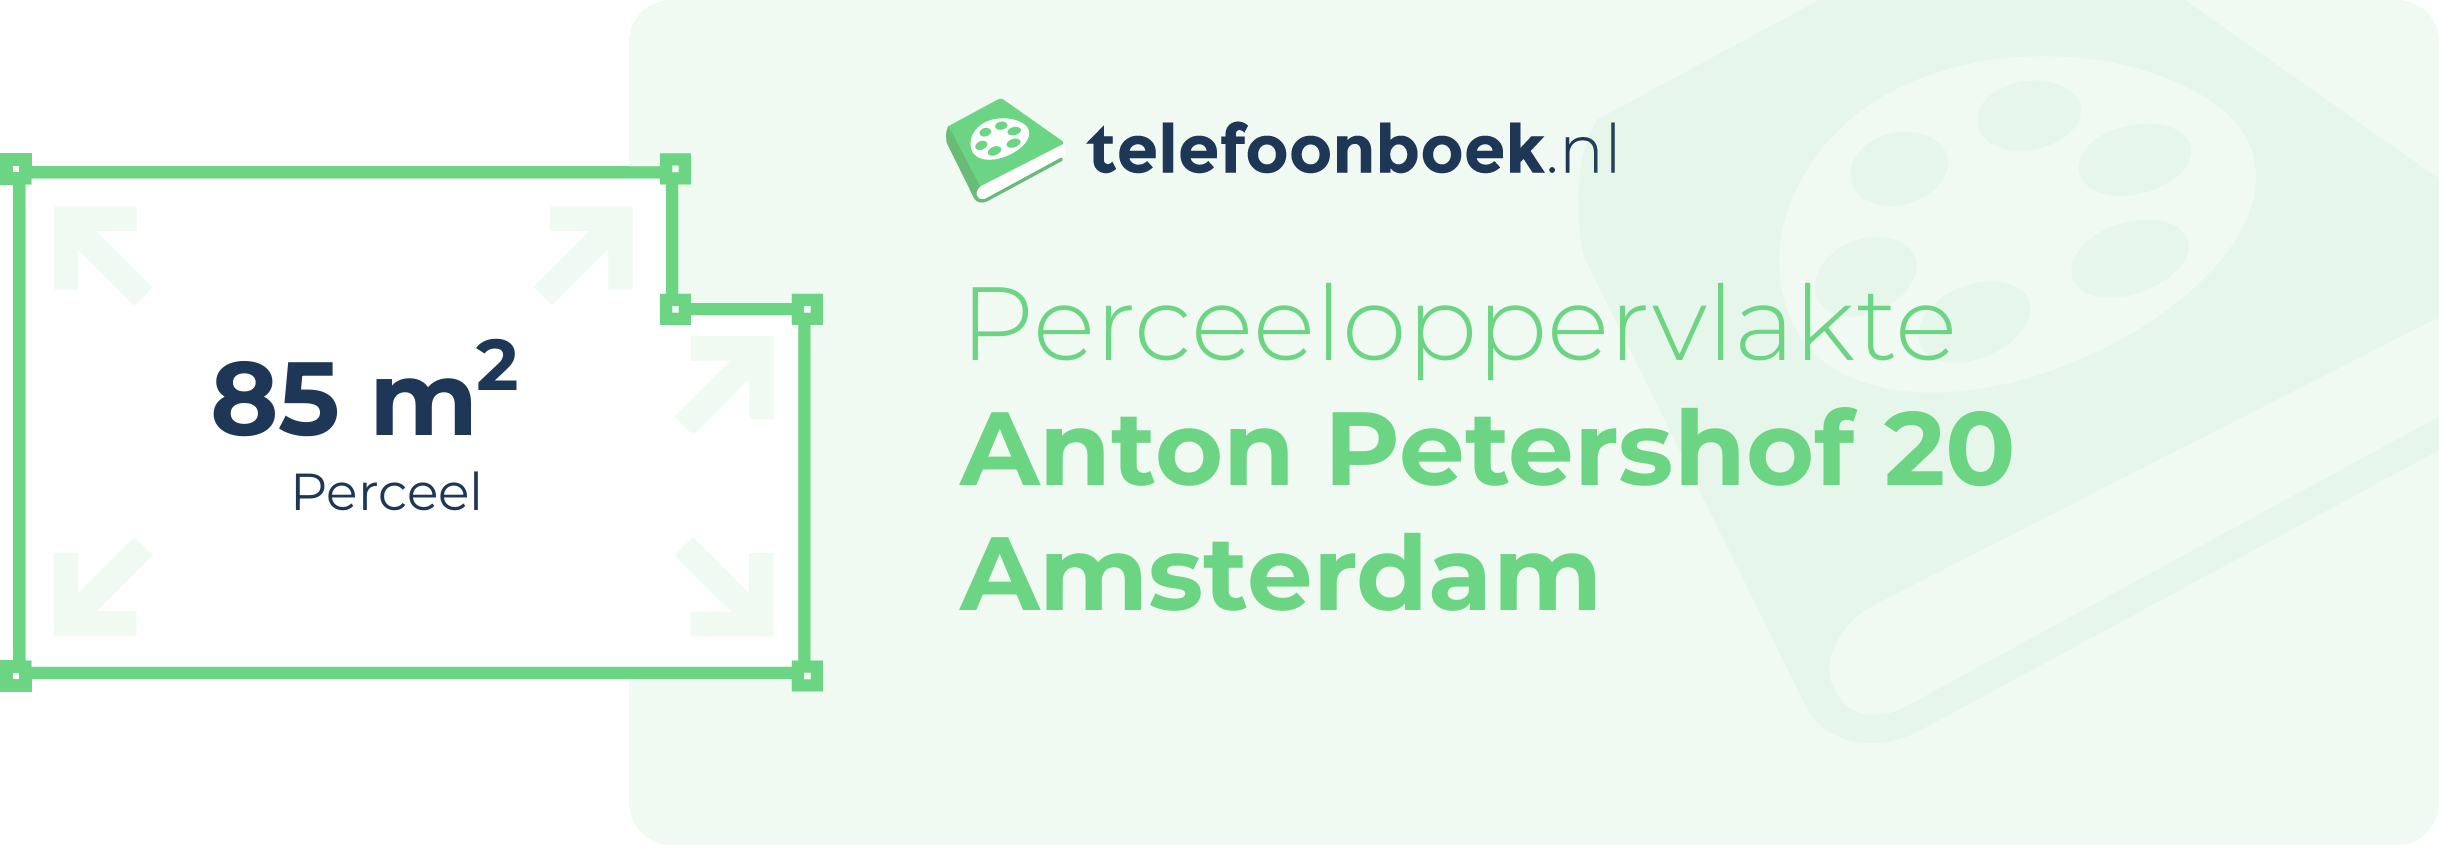 Perceeloppervlakte Anton Petershof 20 Amsterdam